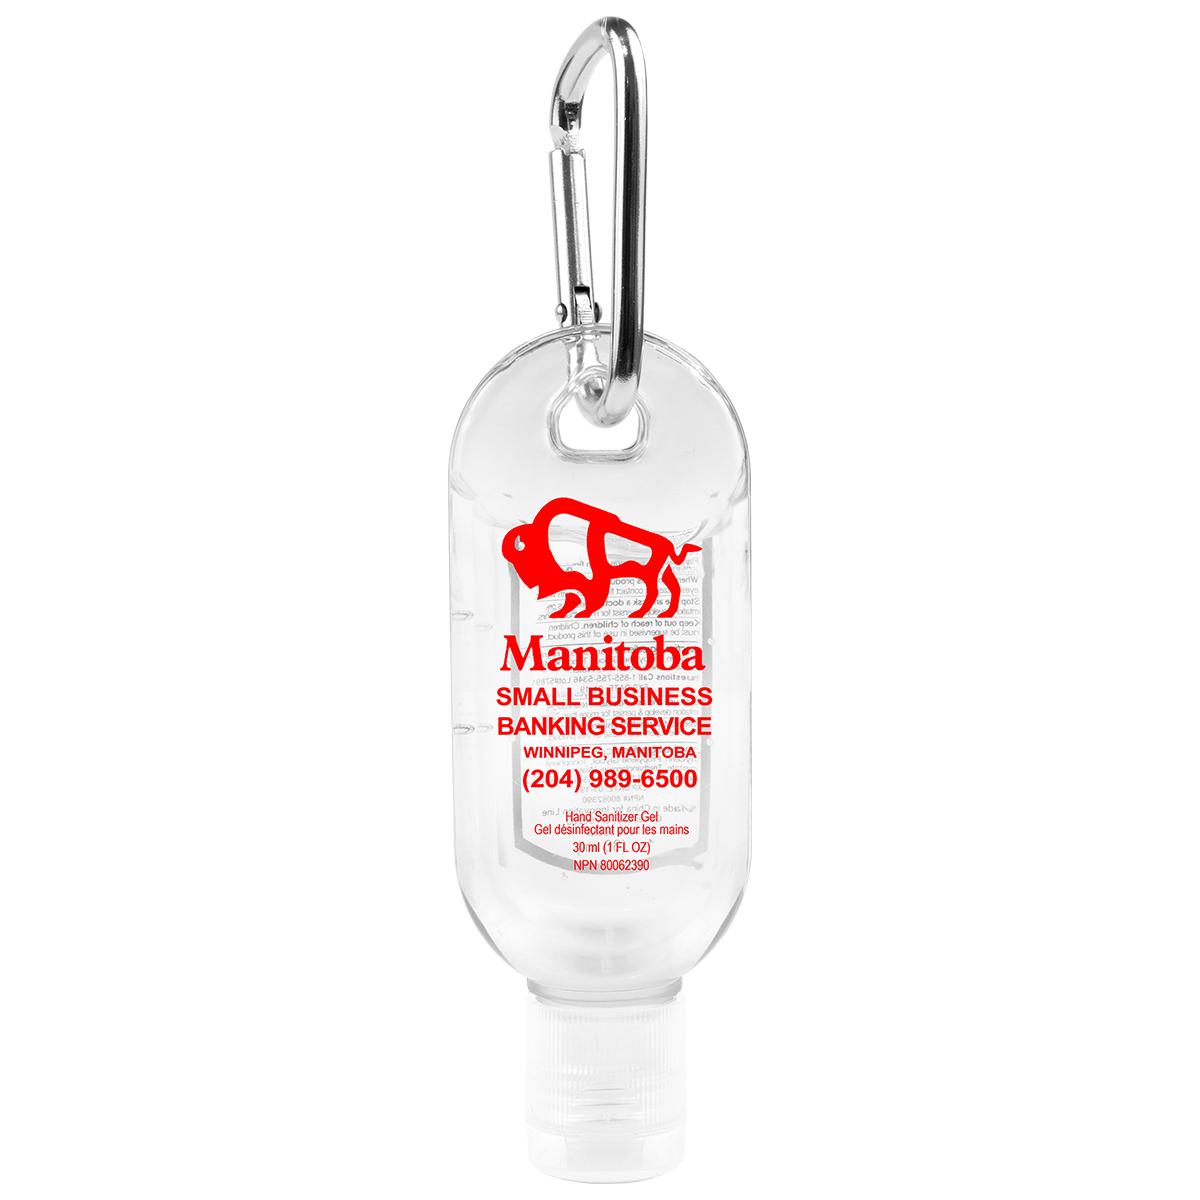 1.8 oz Hand Sanitizer Antibacterial Gel in Flip-Top Bottle with Carabiner